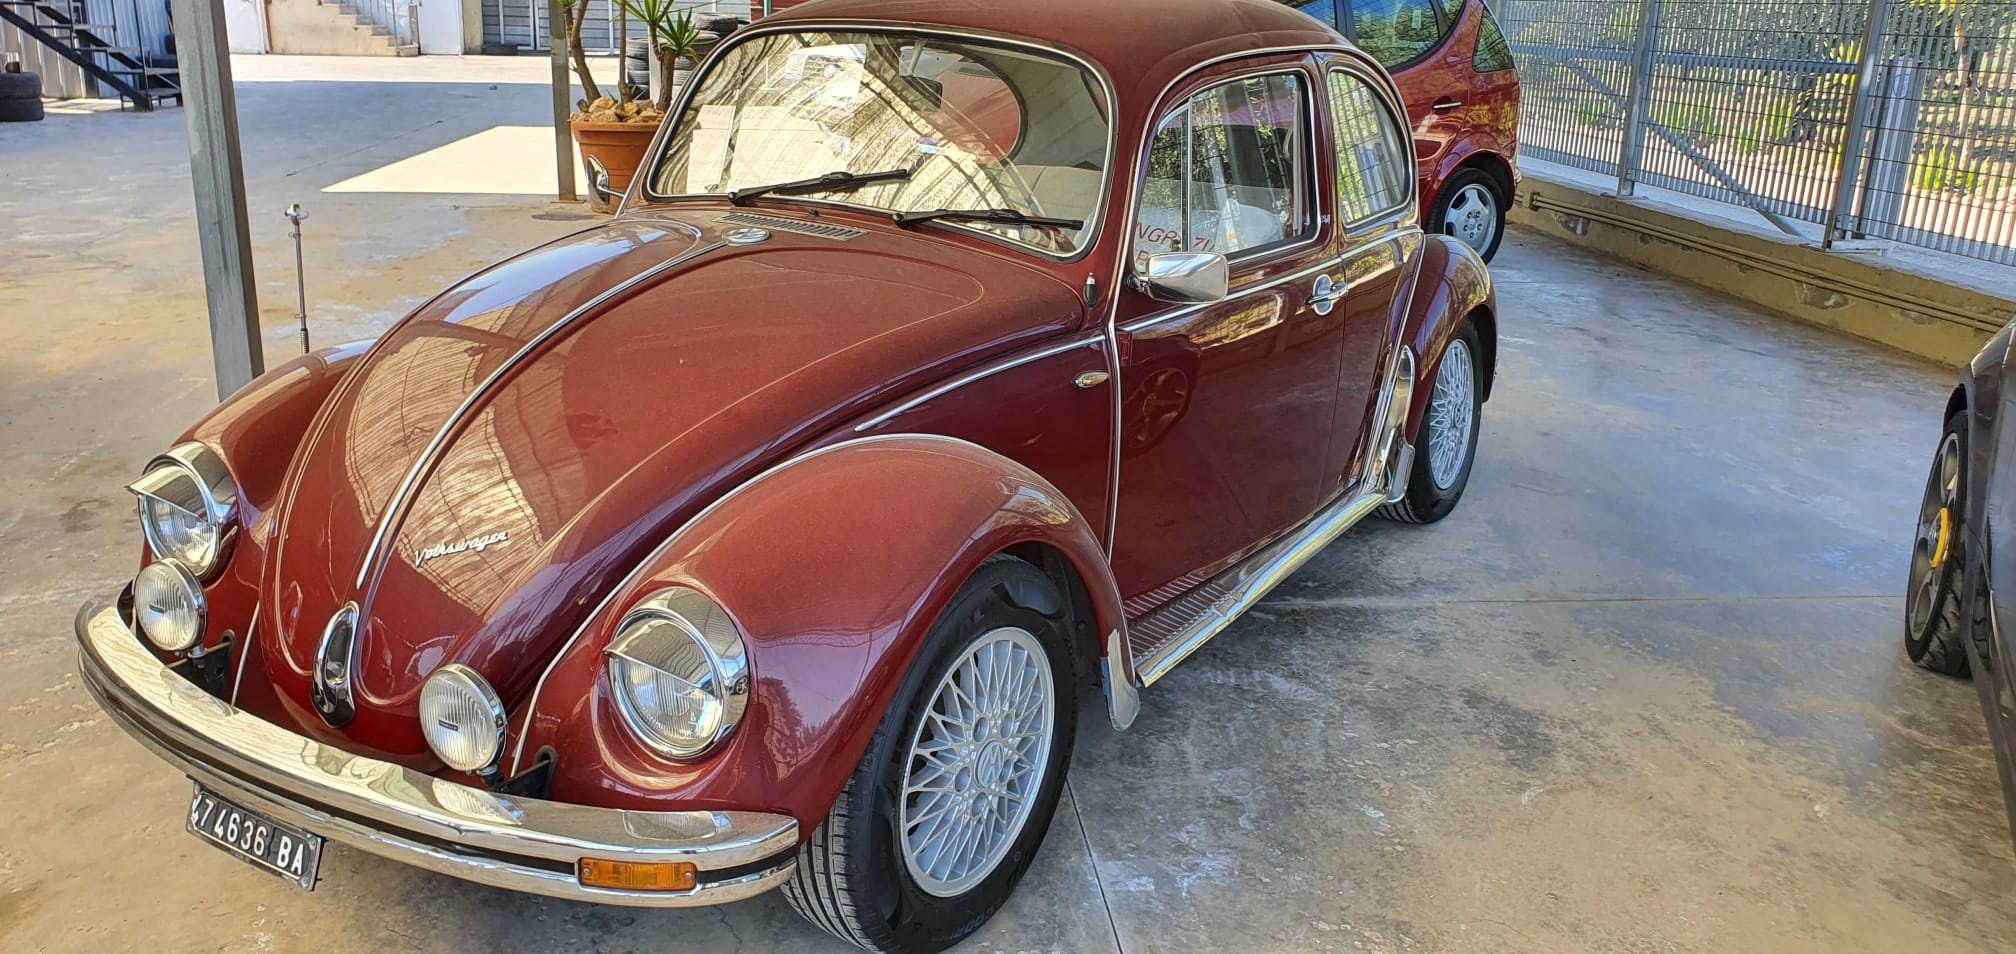 Al momento stai visualizzando Volkswagen maggiolino anni 70 in vendita presso il nostro autosalone, €15.000. Totalmente restaurata, ben tenuta come da foto, pari al nuovo. Info solo telefonando al 348 5846422.<br>Universal Car di Nicola Ladisa.